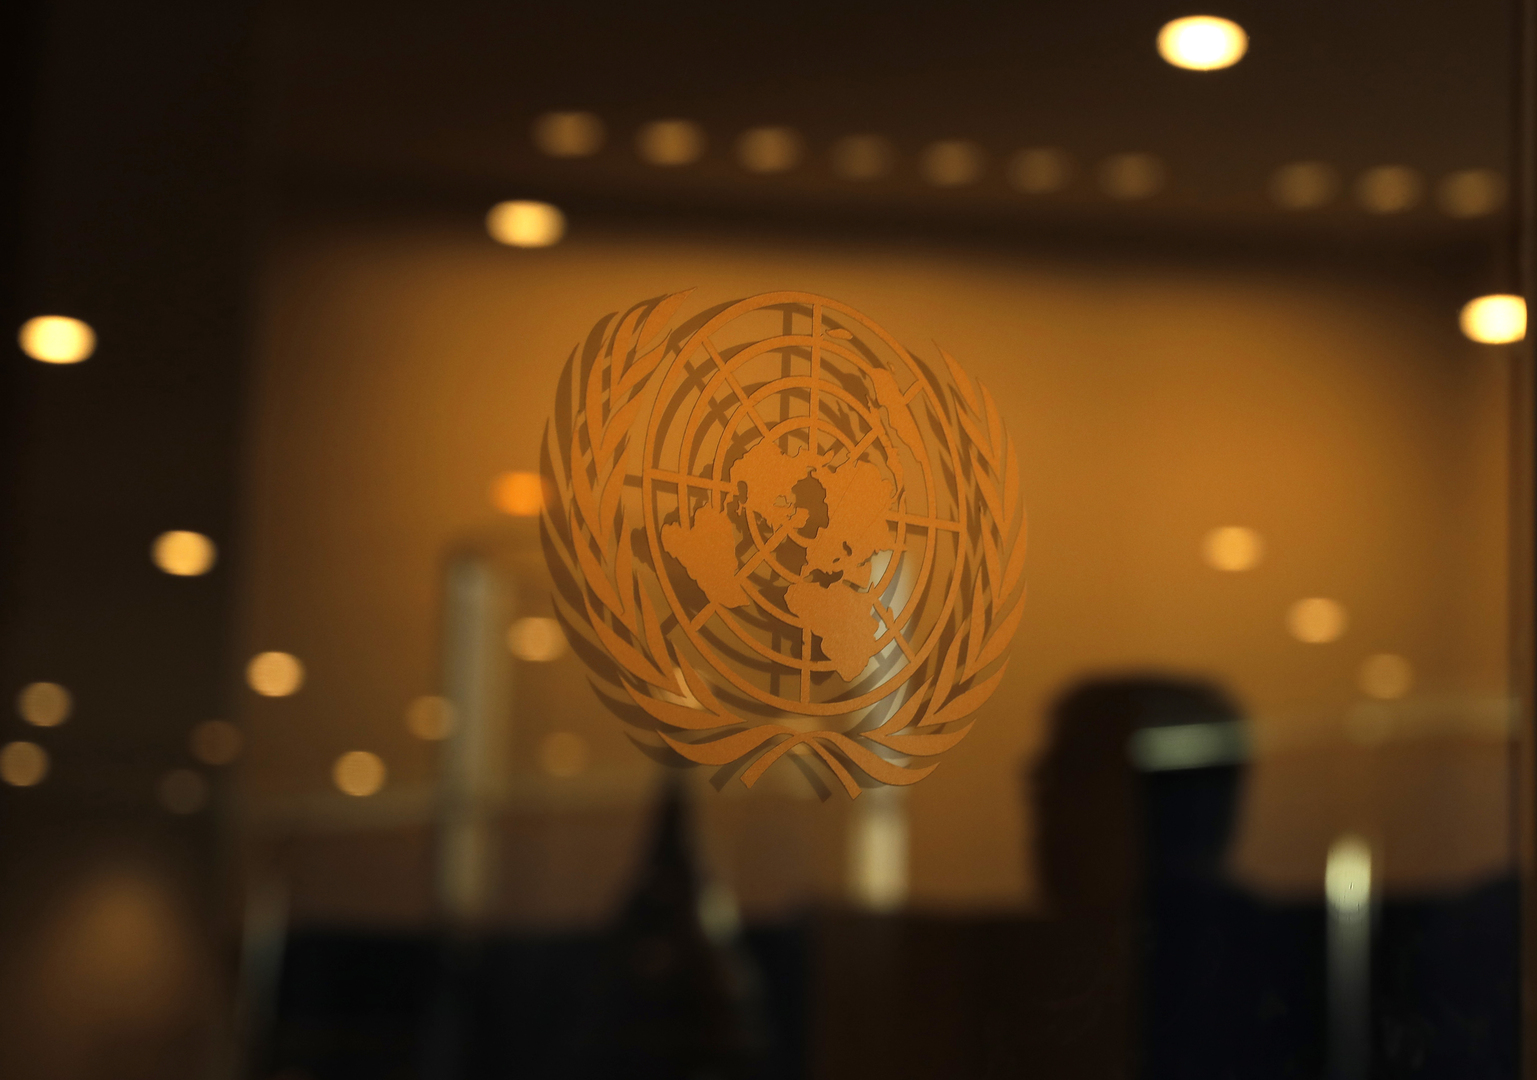 الأمم المتحدة تنوي مناقشة حماية حقوق الإنسان أثناء حجب الحسابات على مواقع التواصل الاجتماعي